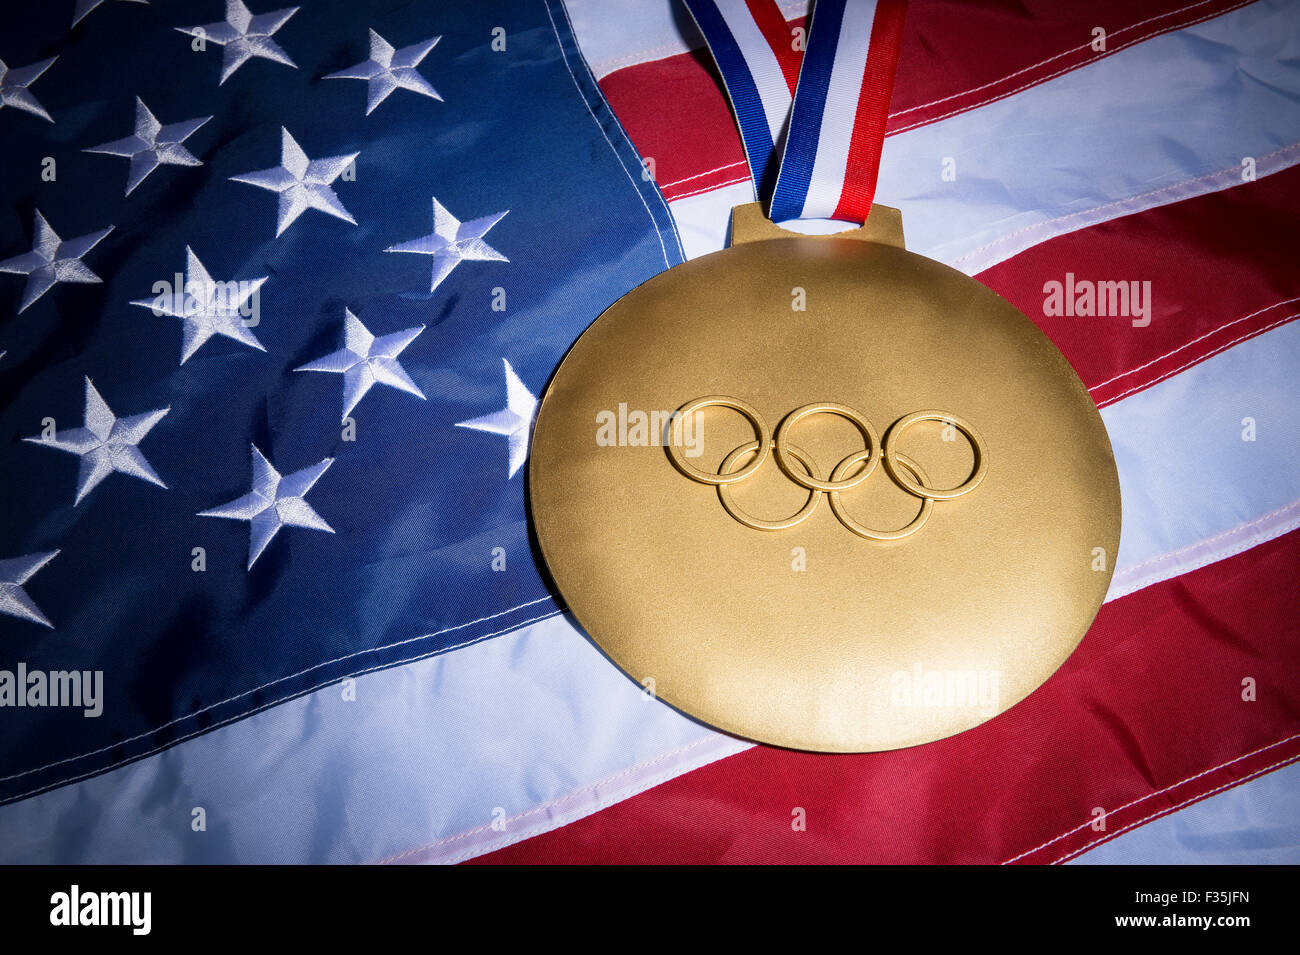 Río de Janeiro, Brasil - Febrero 3, 2015: Gran medalla de oro con aros olímpicos se asienta en el fondo de la bandera americana. Foto de stock